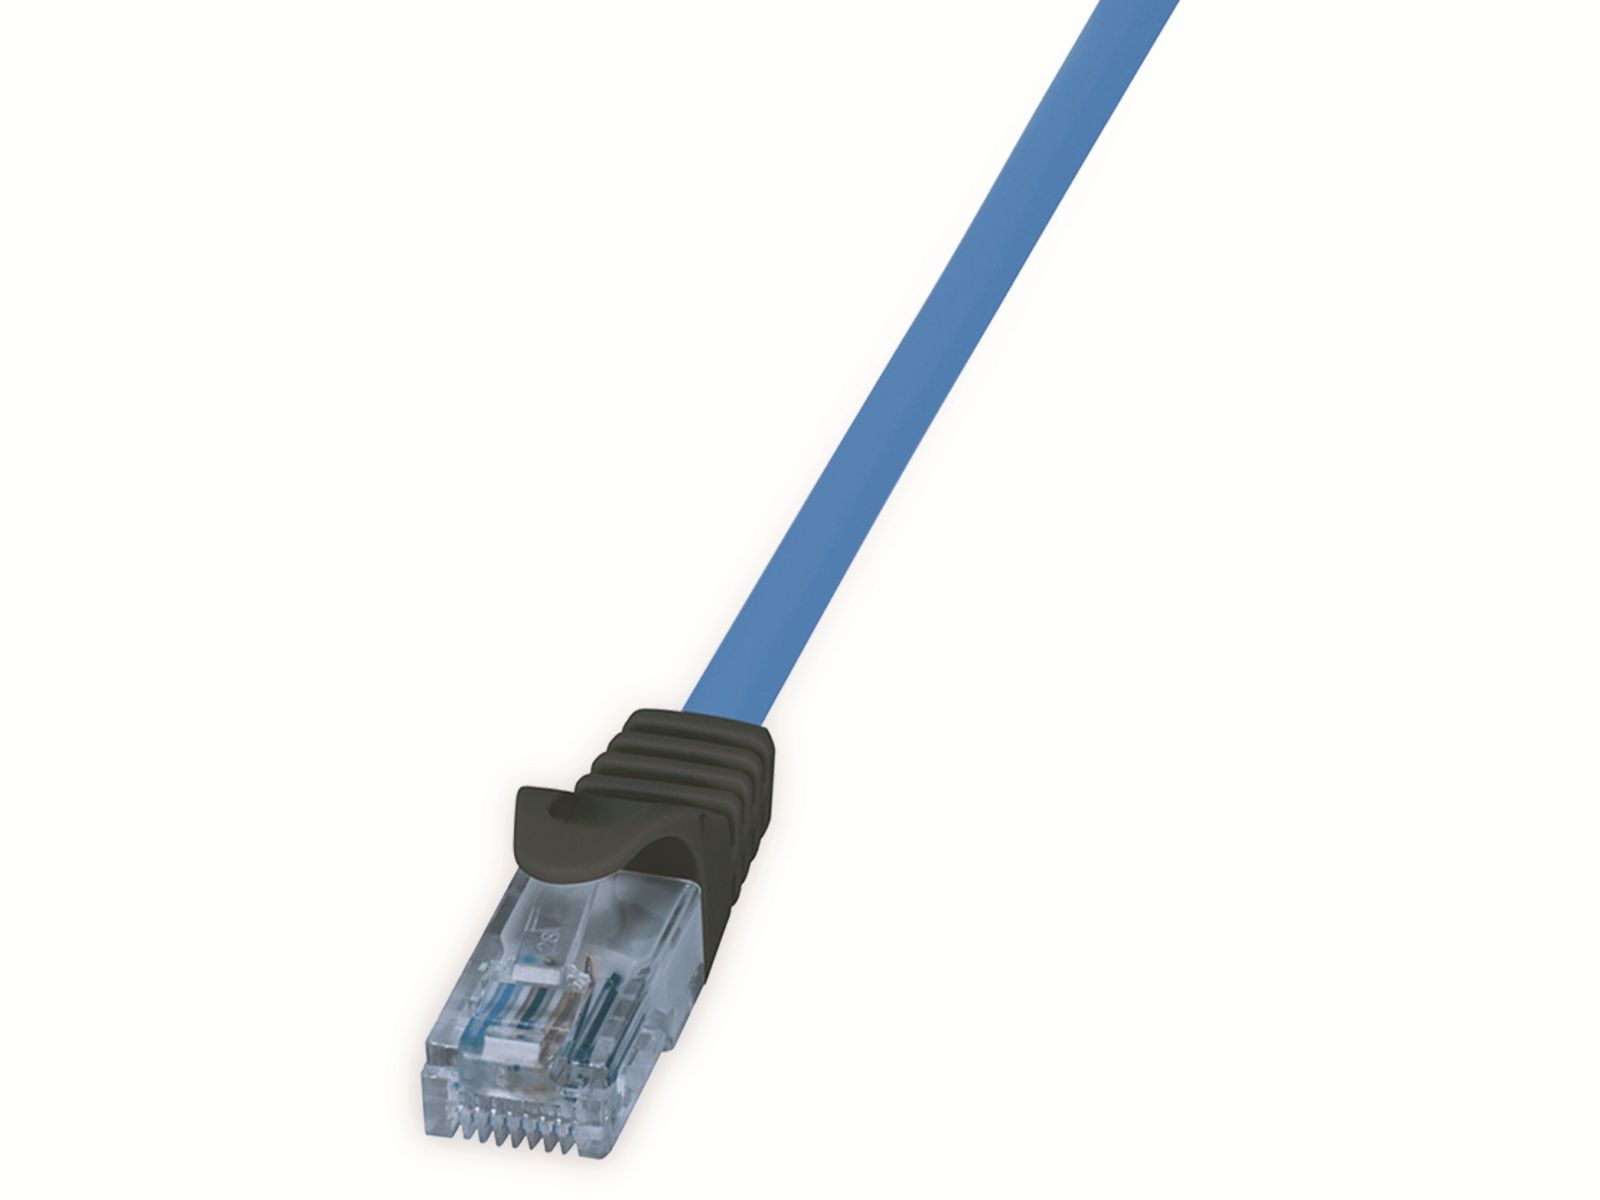 Netzwerkkabel, 40 PoE, m 40 CPP015, blau, HDBT, m, LOGILINK CAT.6a U/UTP, Netzwerkkabel 10G,